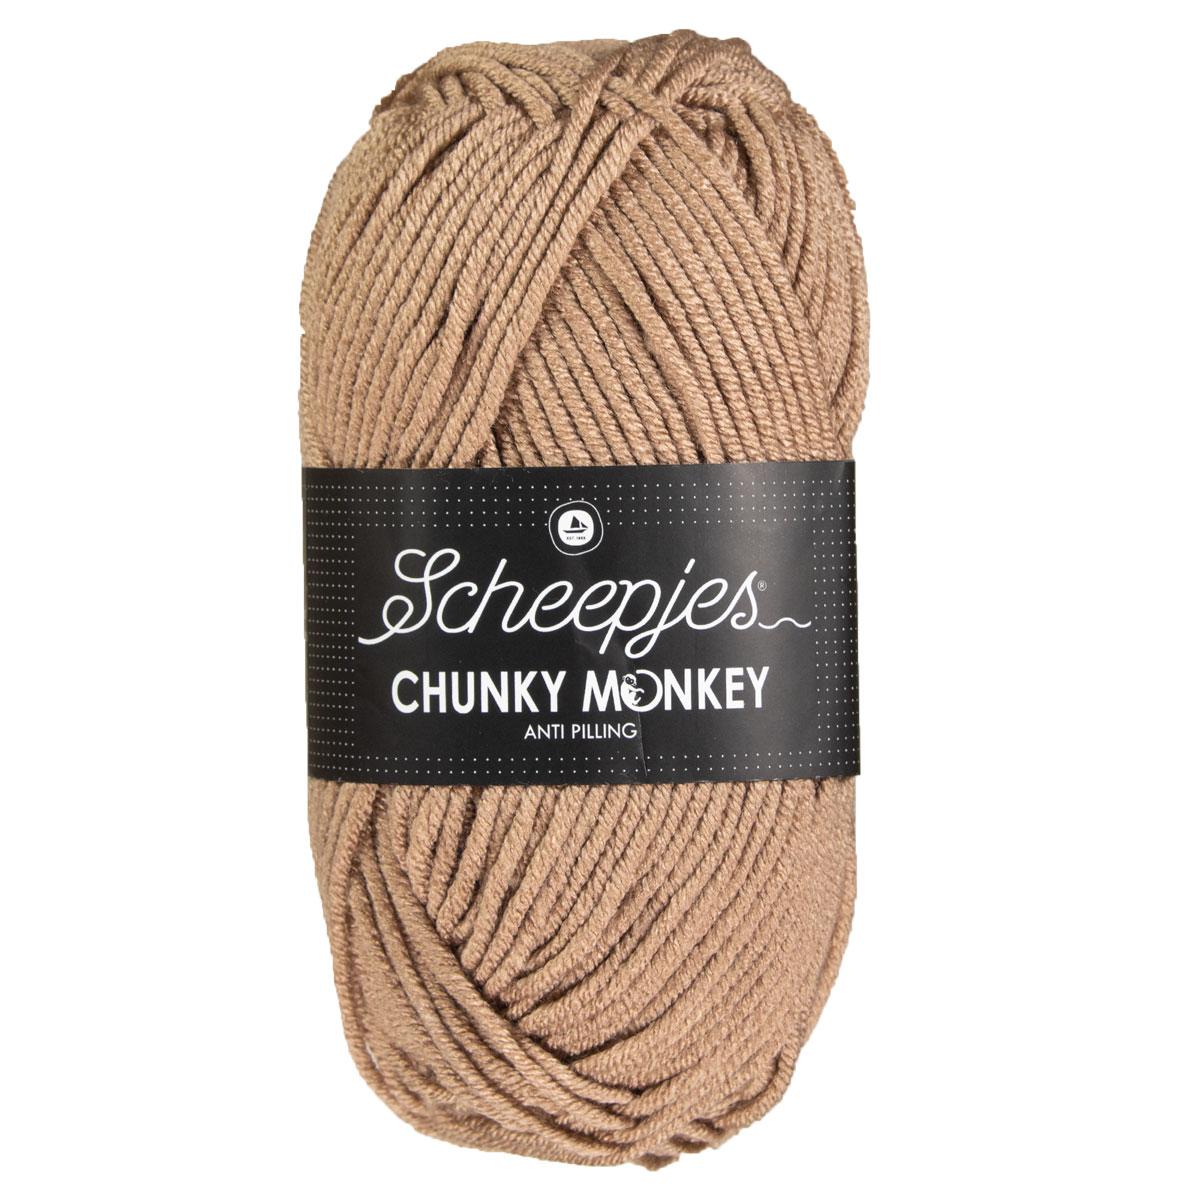 Scheepjes Chunky Monkey Yarn - 1064 Beige at Jimmy Beans Wool